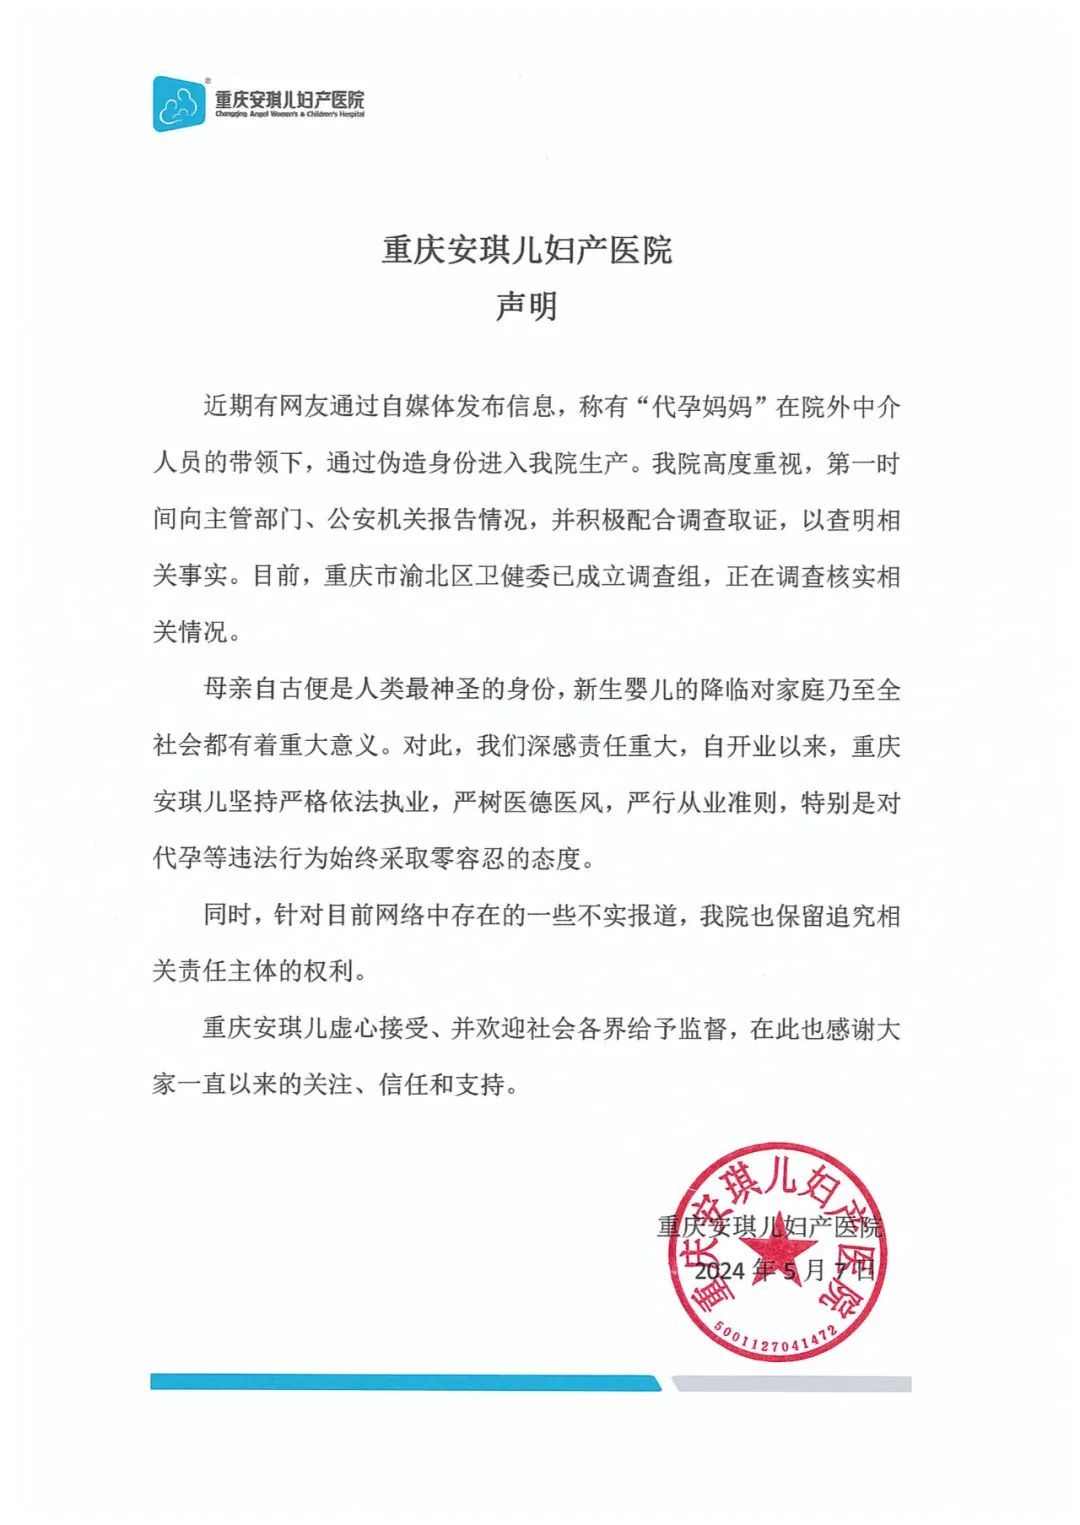 重庆安琪儿妇产医院声明 图源：重庆安琪儿妇产医院官方公众号